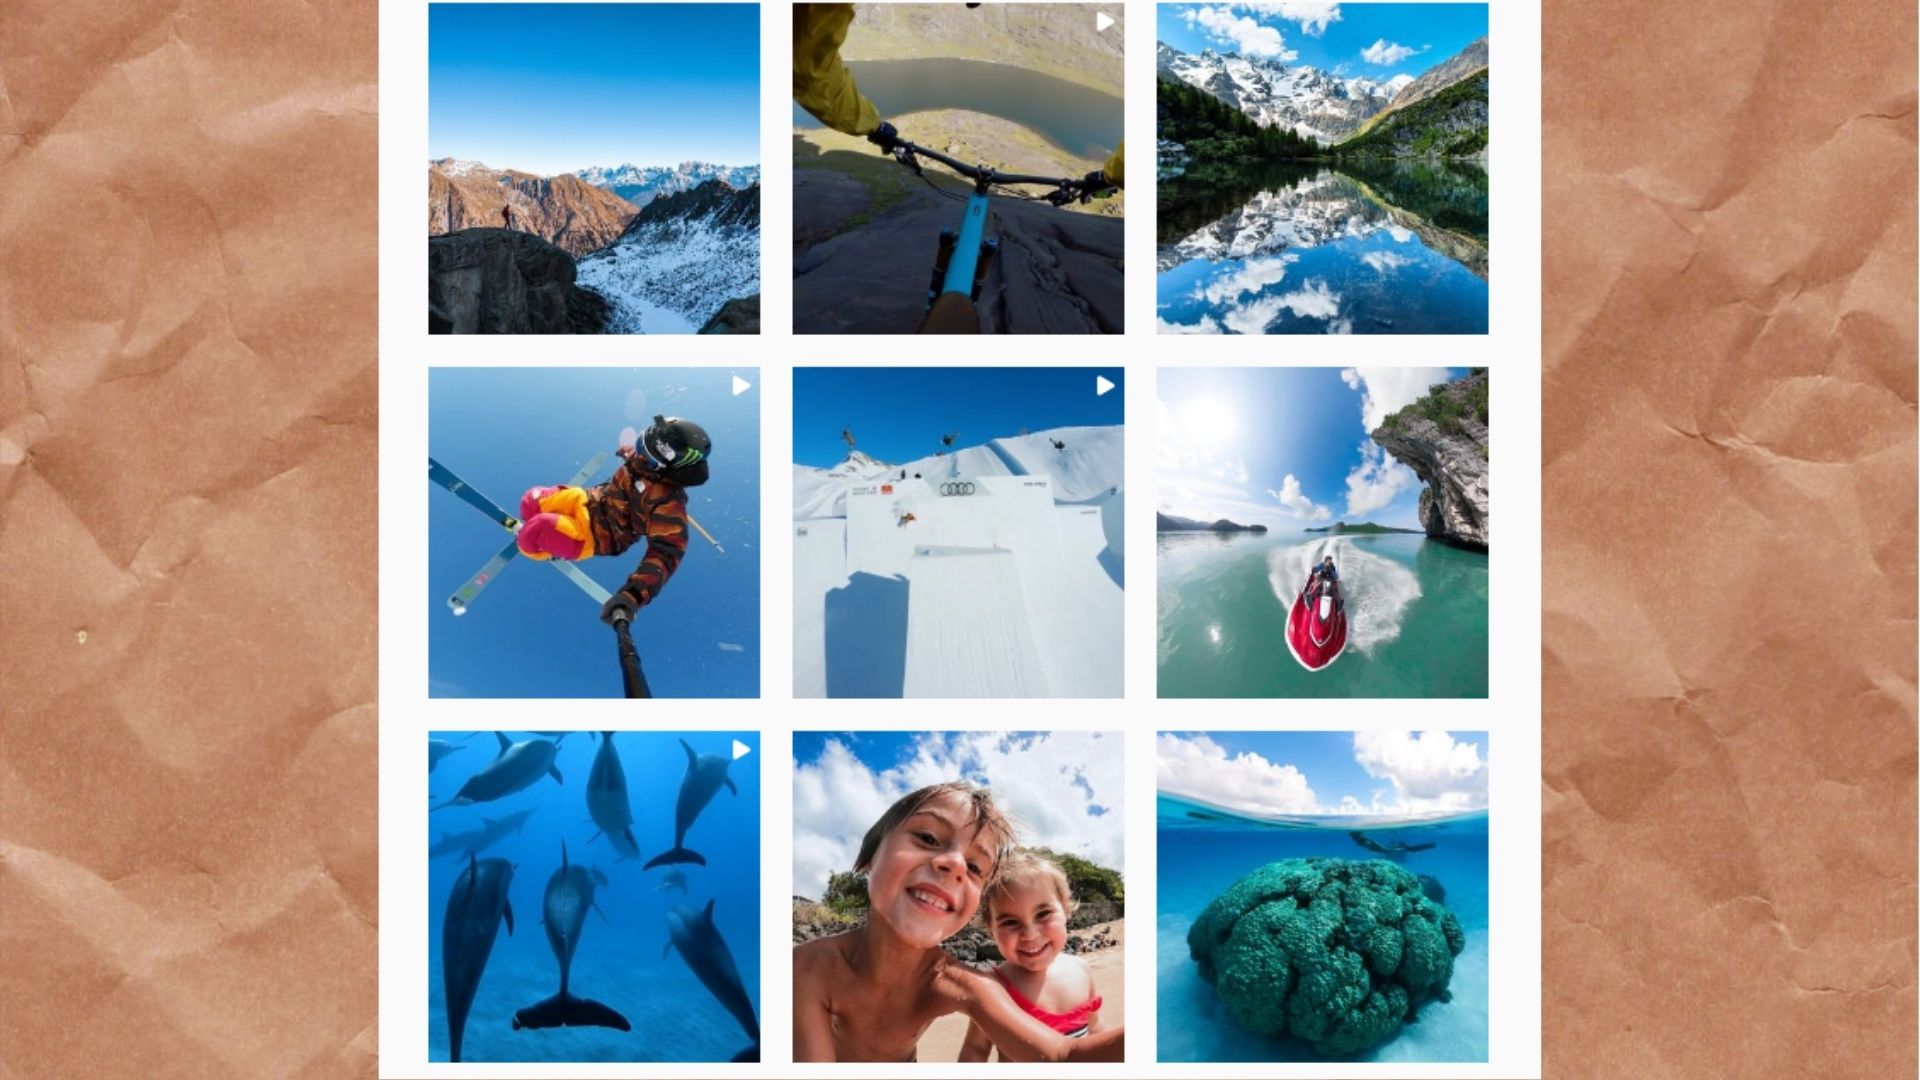 Подводный мир, горы, скалы – малая часть бесплатной рекламы GoPro, ведь ее творят сами покупатели